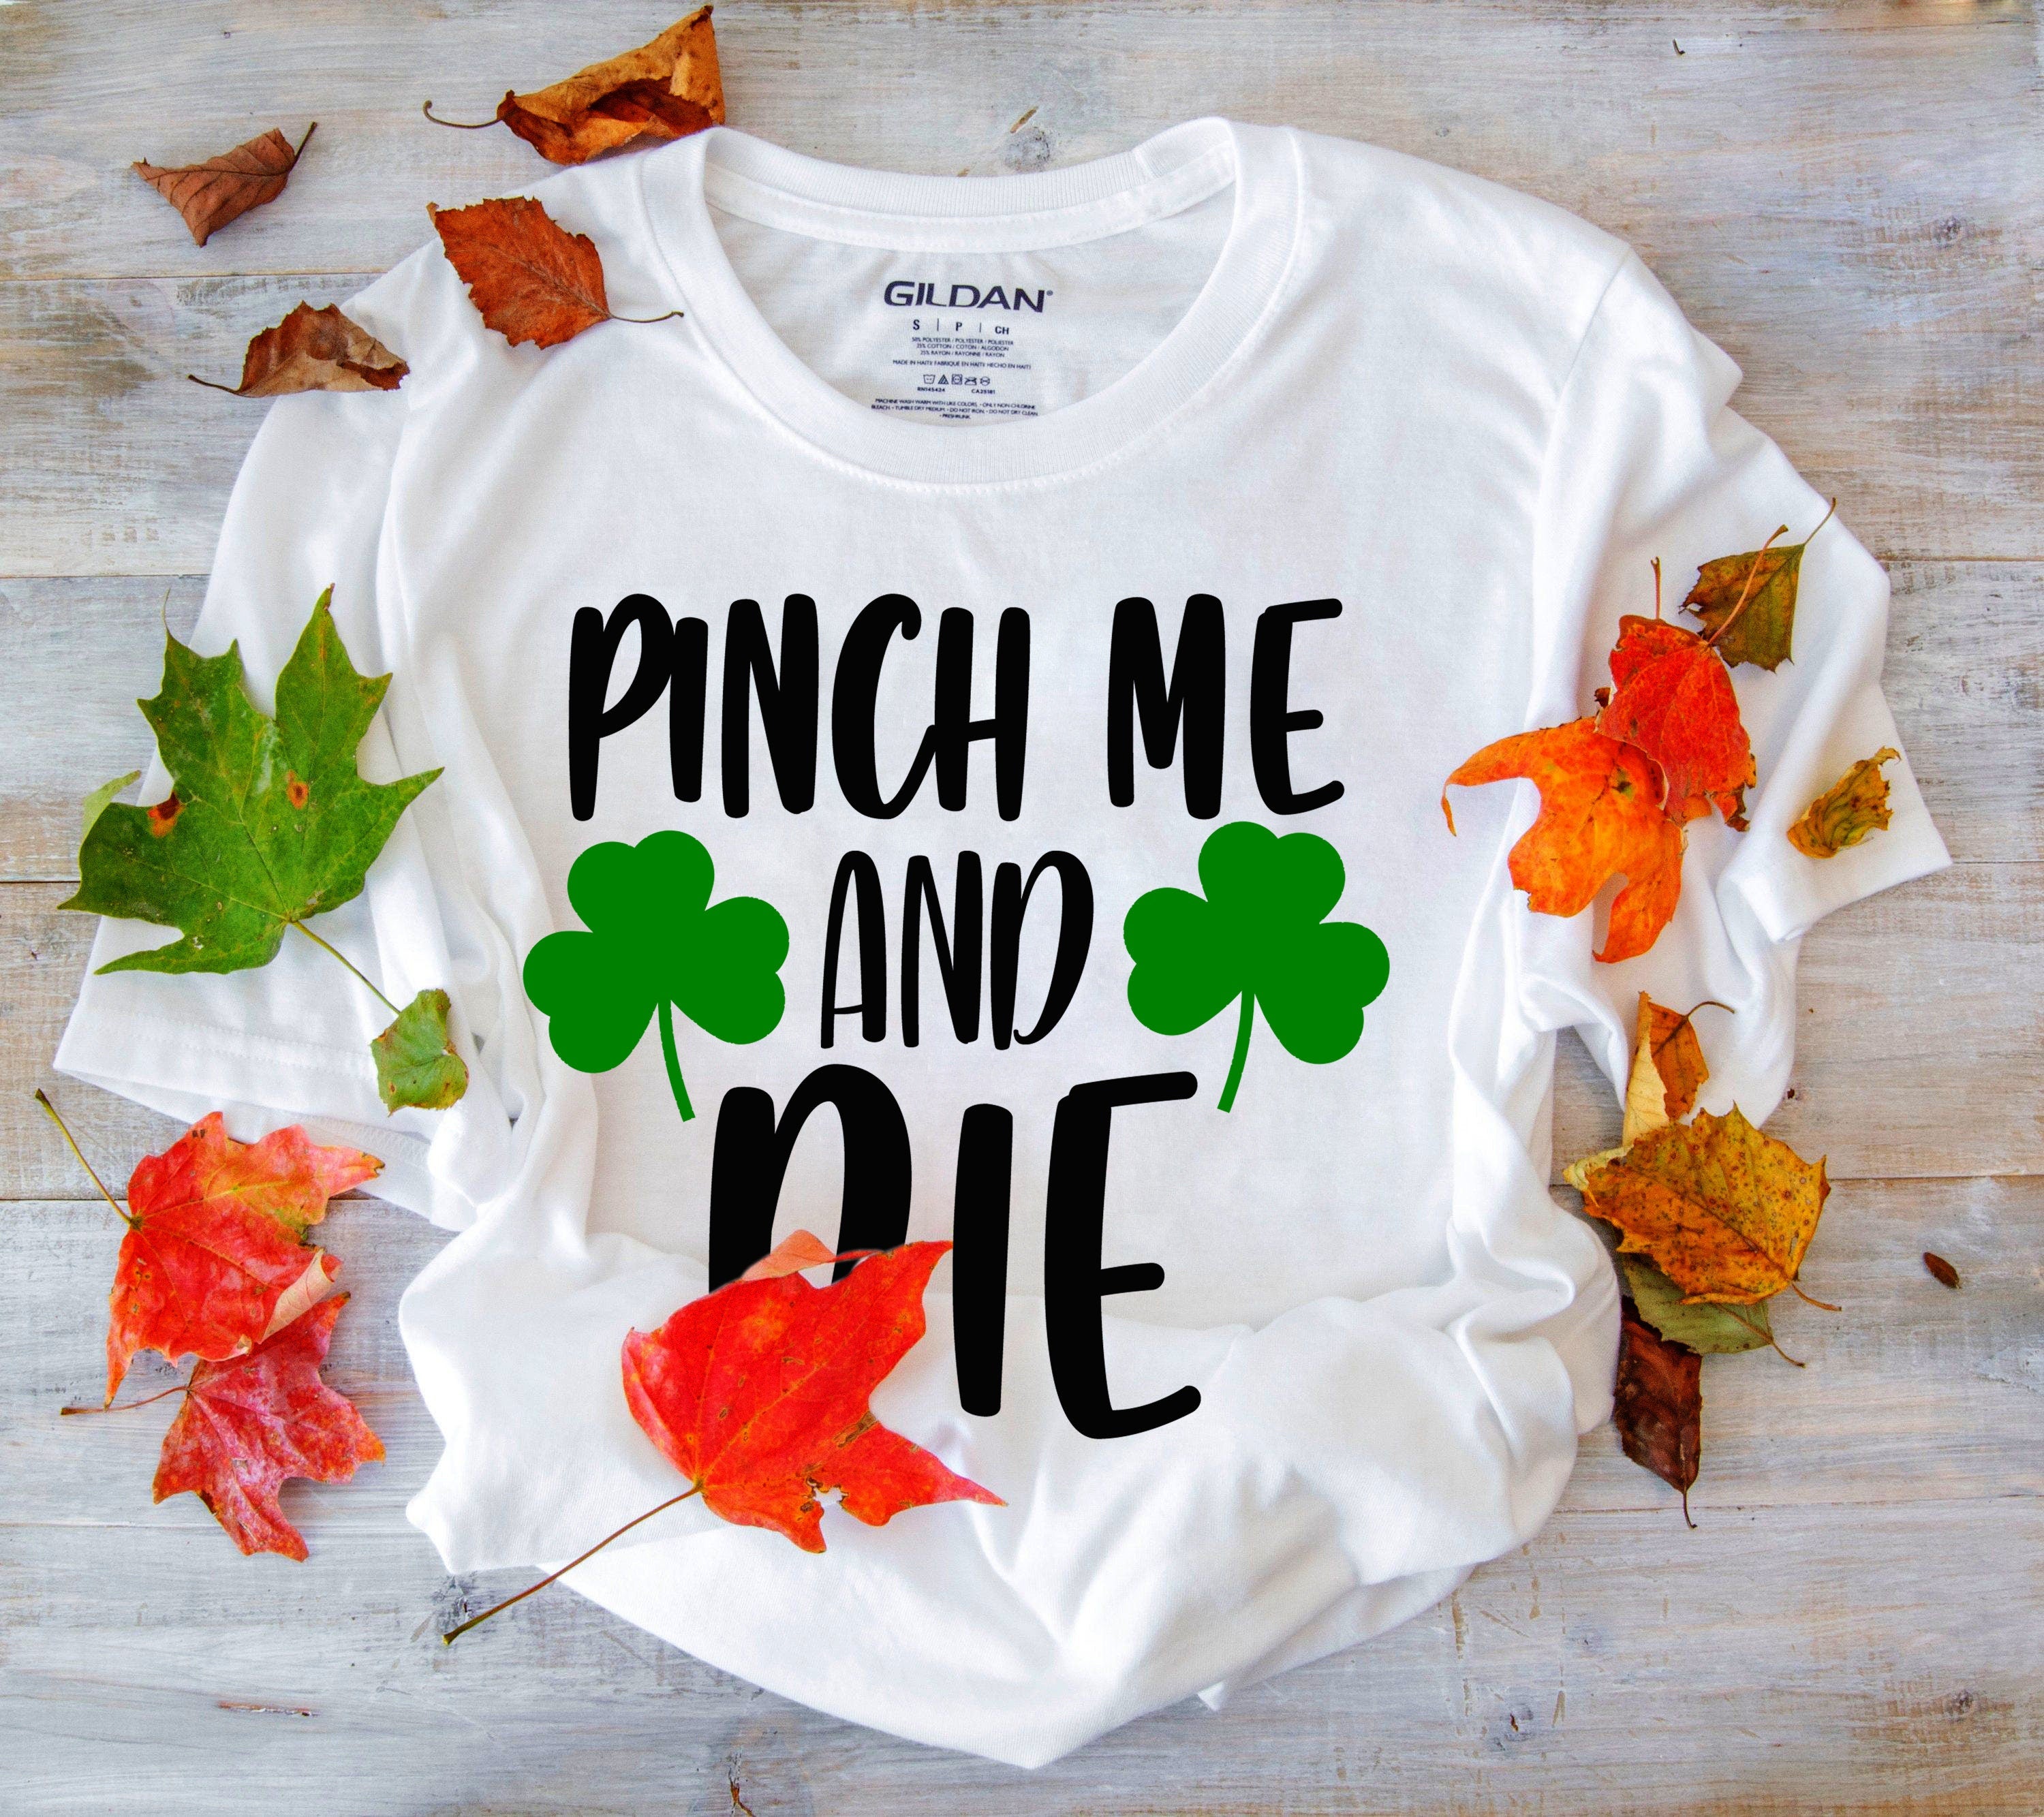 पिंच मी एंड डाई टी-शर्ट, सेंट पैट्रिक डे शर्ट, मार्च शर्ट, सेंट पैट्रिक शर्ट, शेमरॉक शर्ट, लकी आयरिश शर्ट, आयरिश क्लोवर शर्ट - प्लसमिनस्को.कॉम